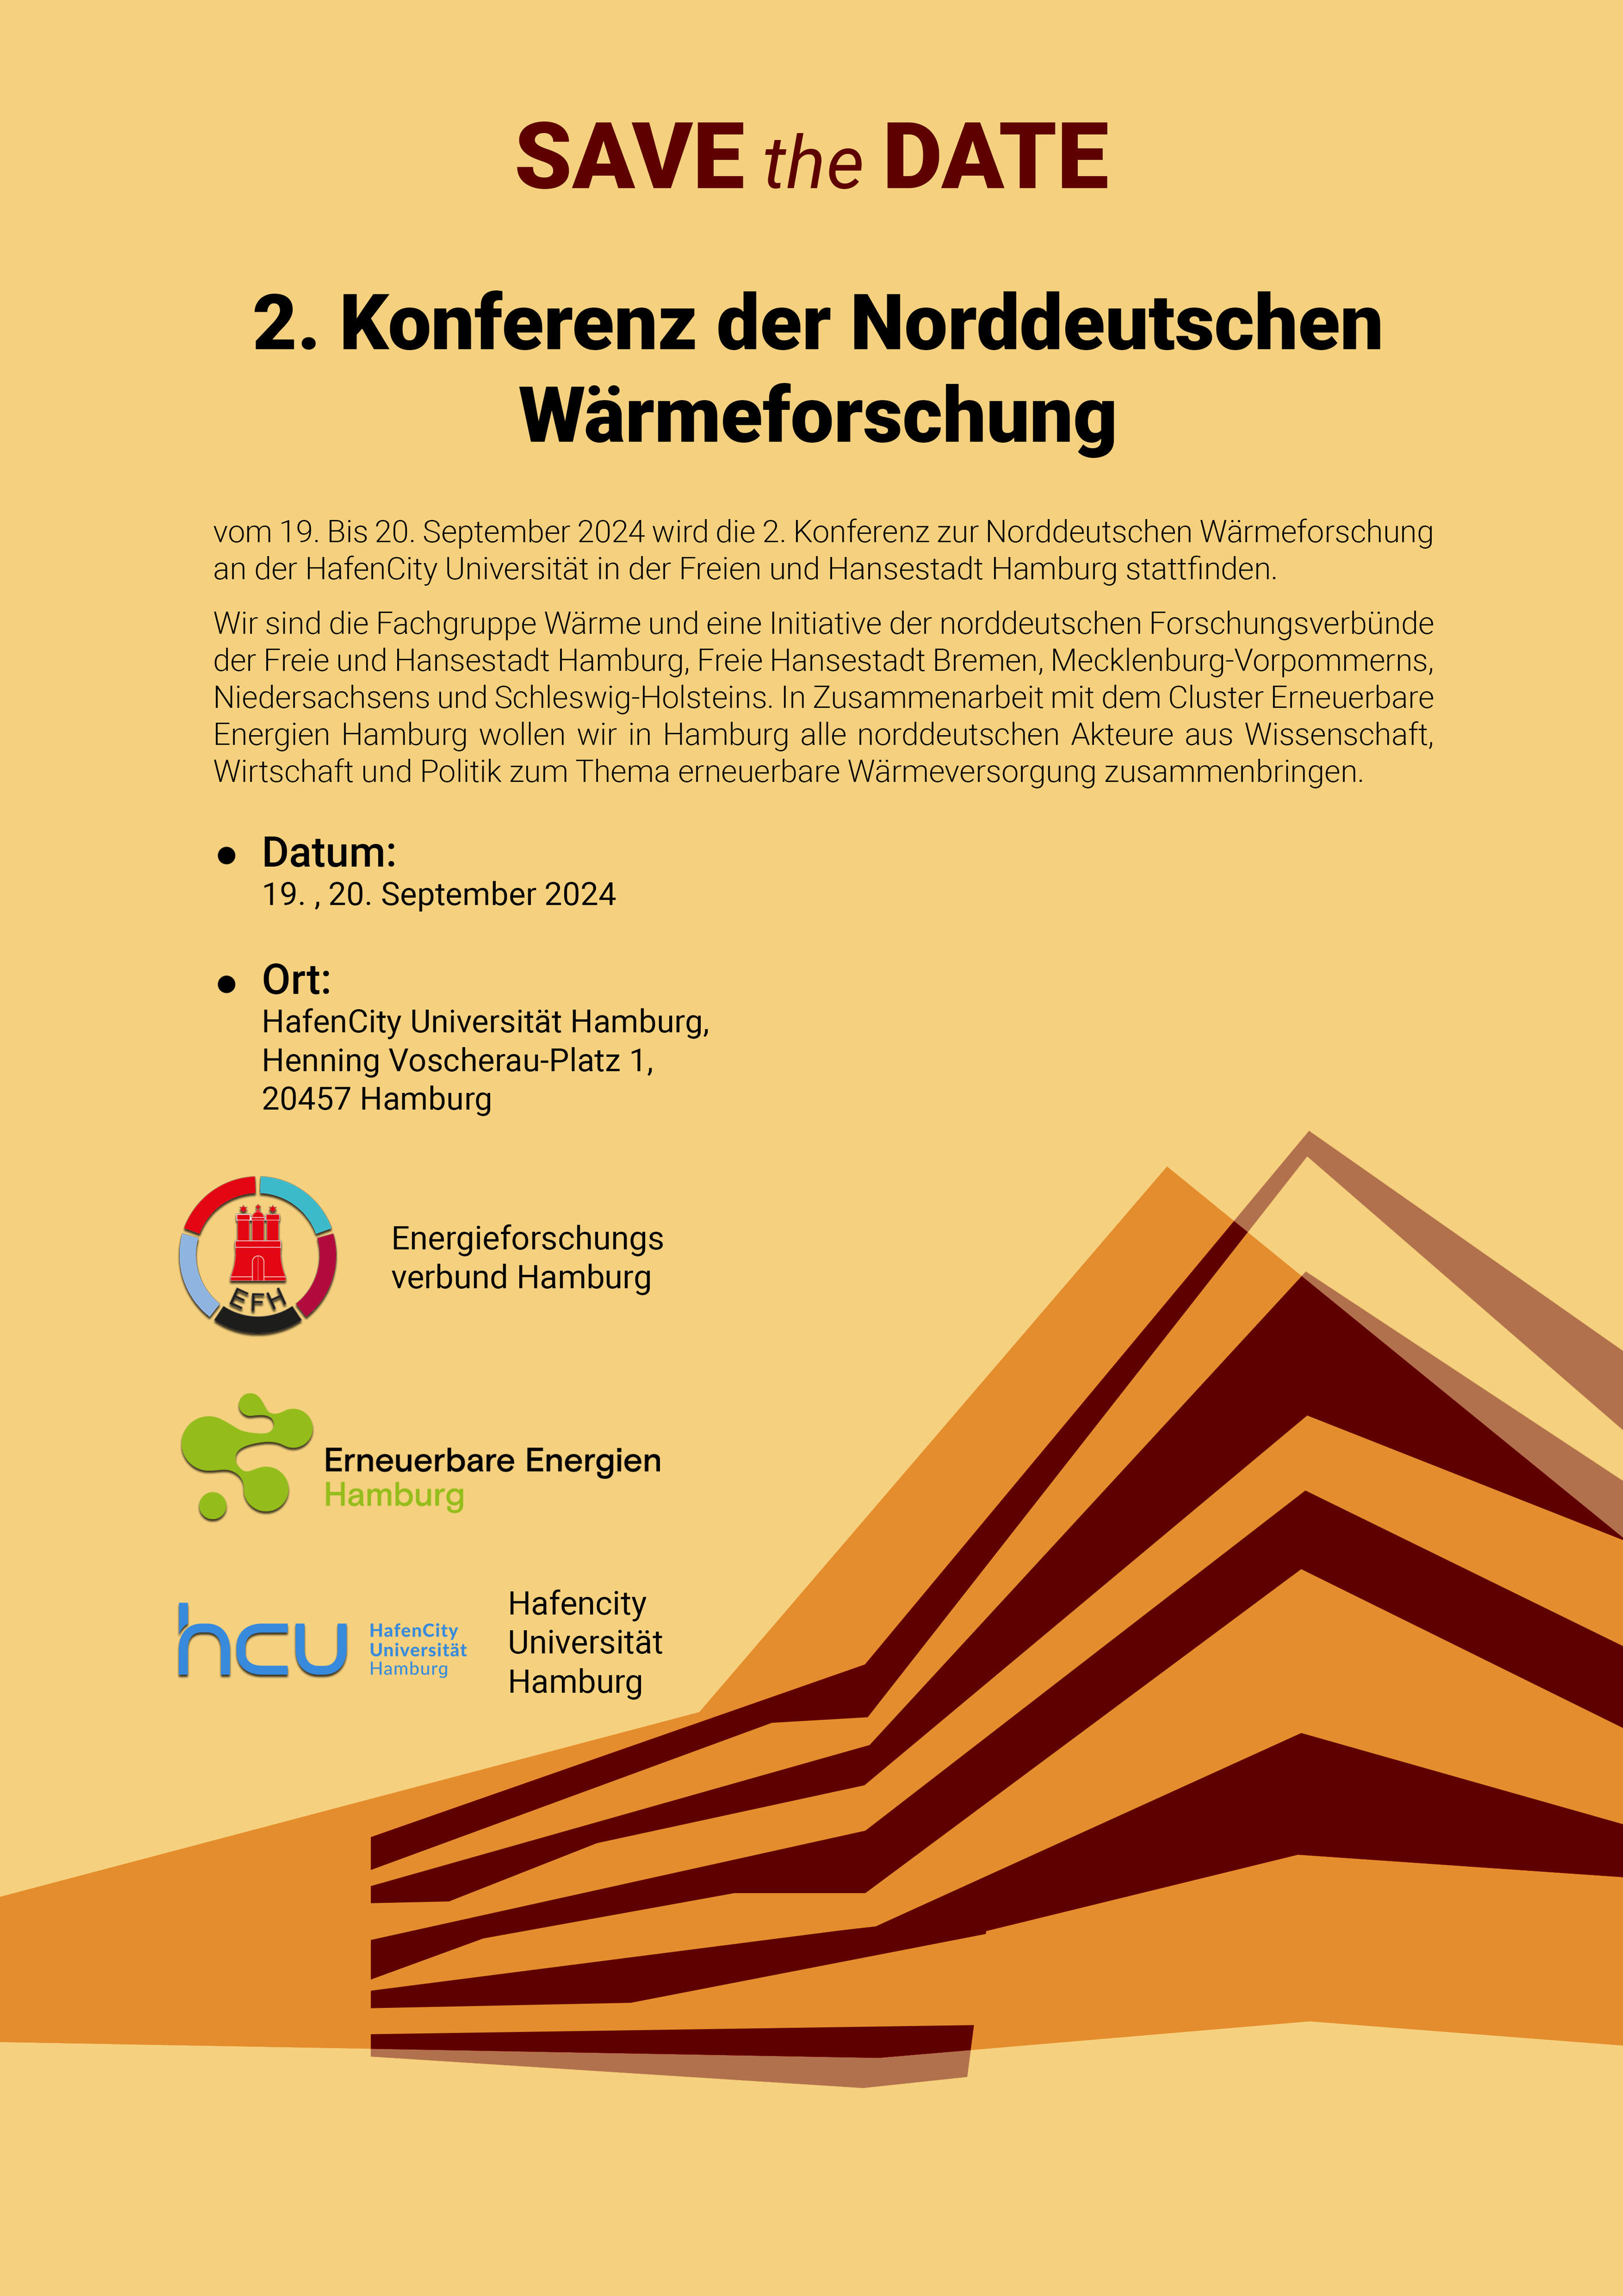 Save the Date Poster 2. Konferenz der Norddeutschen Wärmeforschung